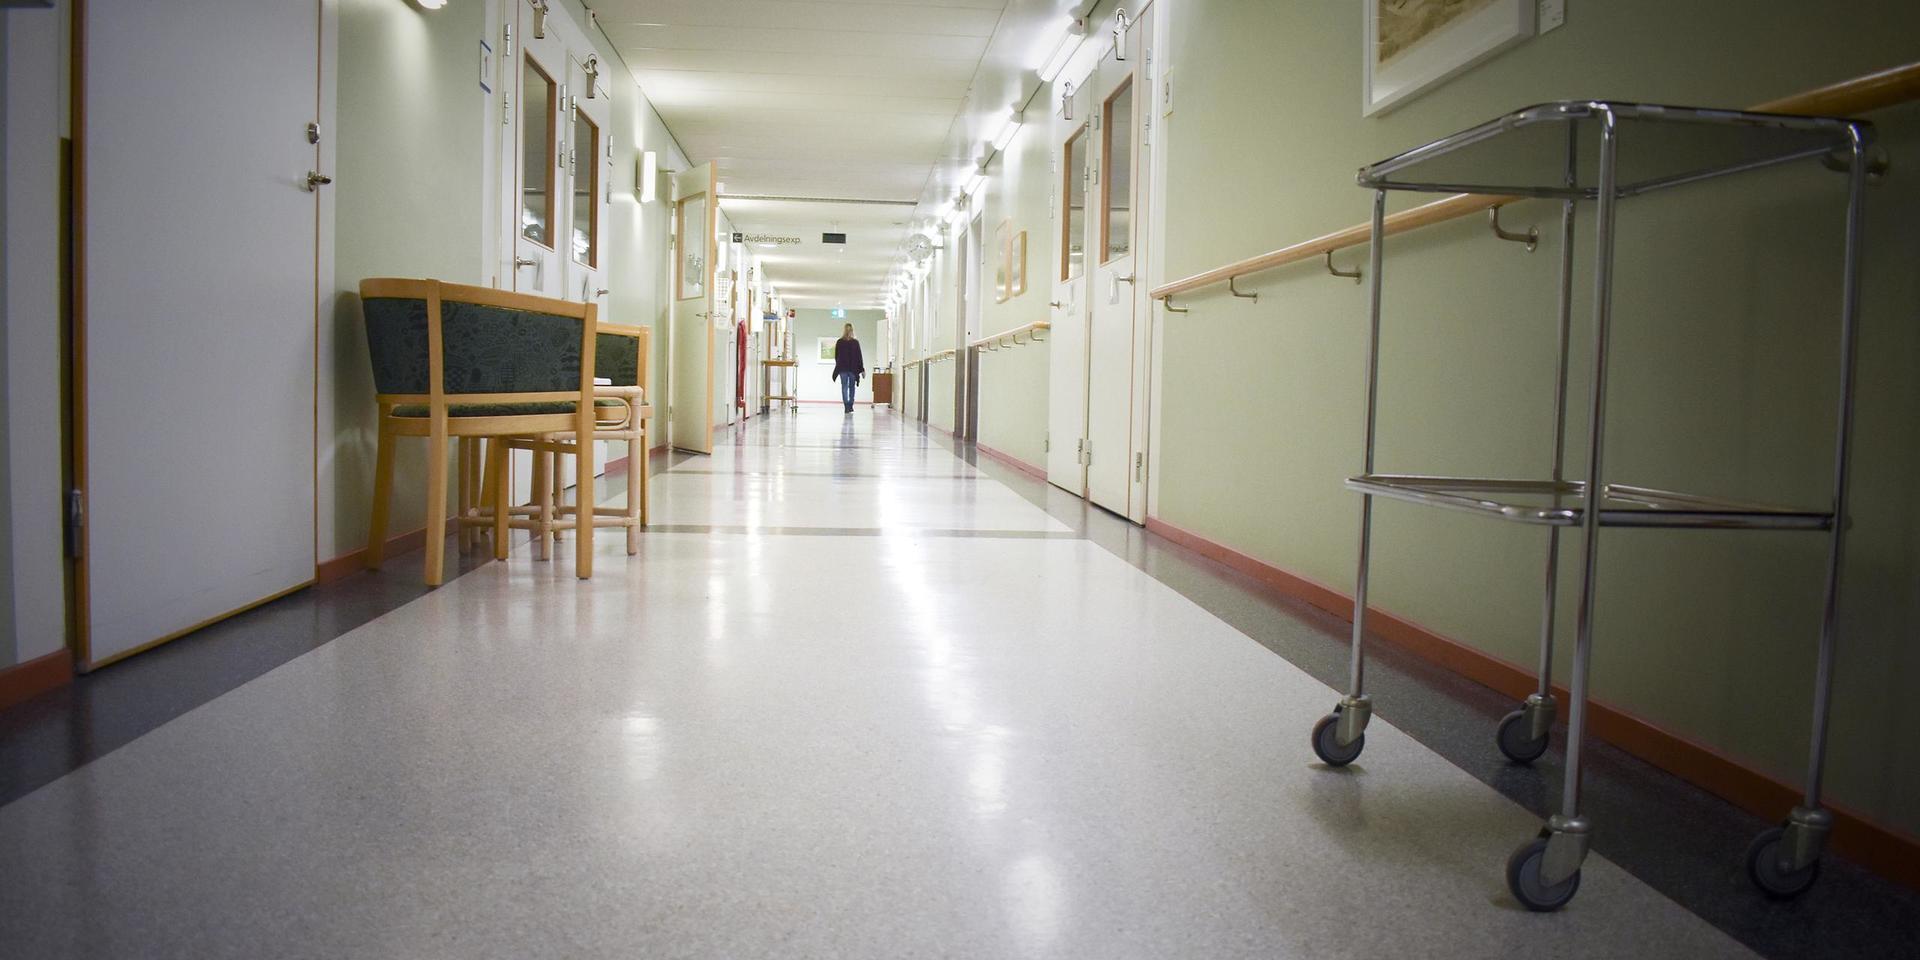 Sjukhusledningen kan jobba hemifrån, och skulle de behöva träffas finns det gott om tomma lokaler på Uddevalla sjukhus, menar Bergfinn Tveit.